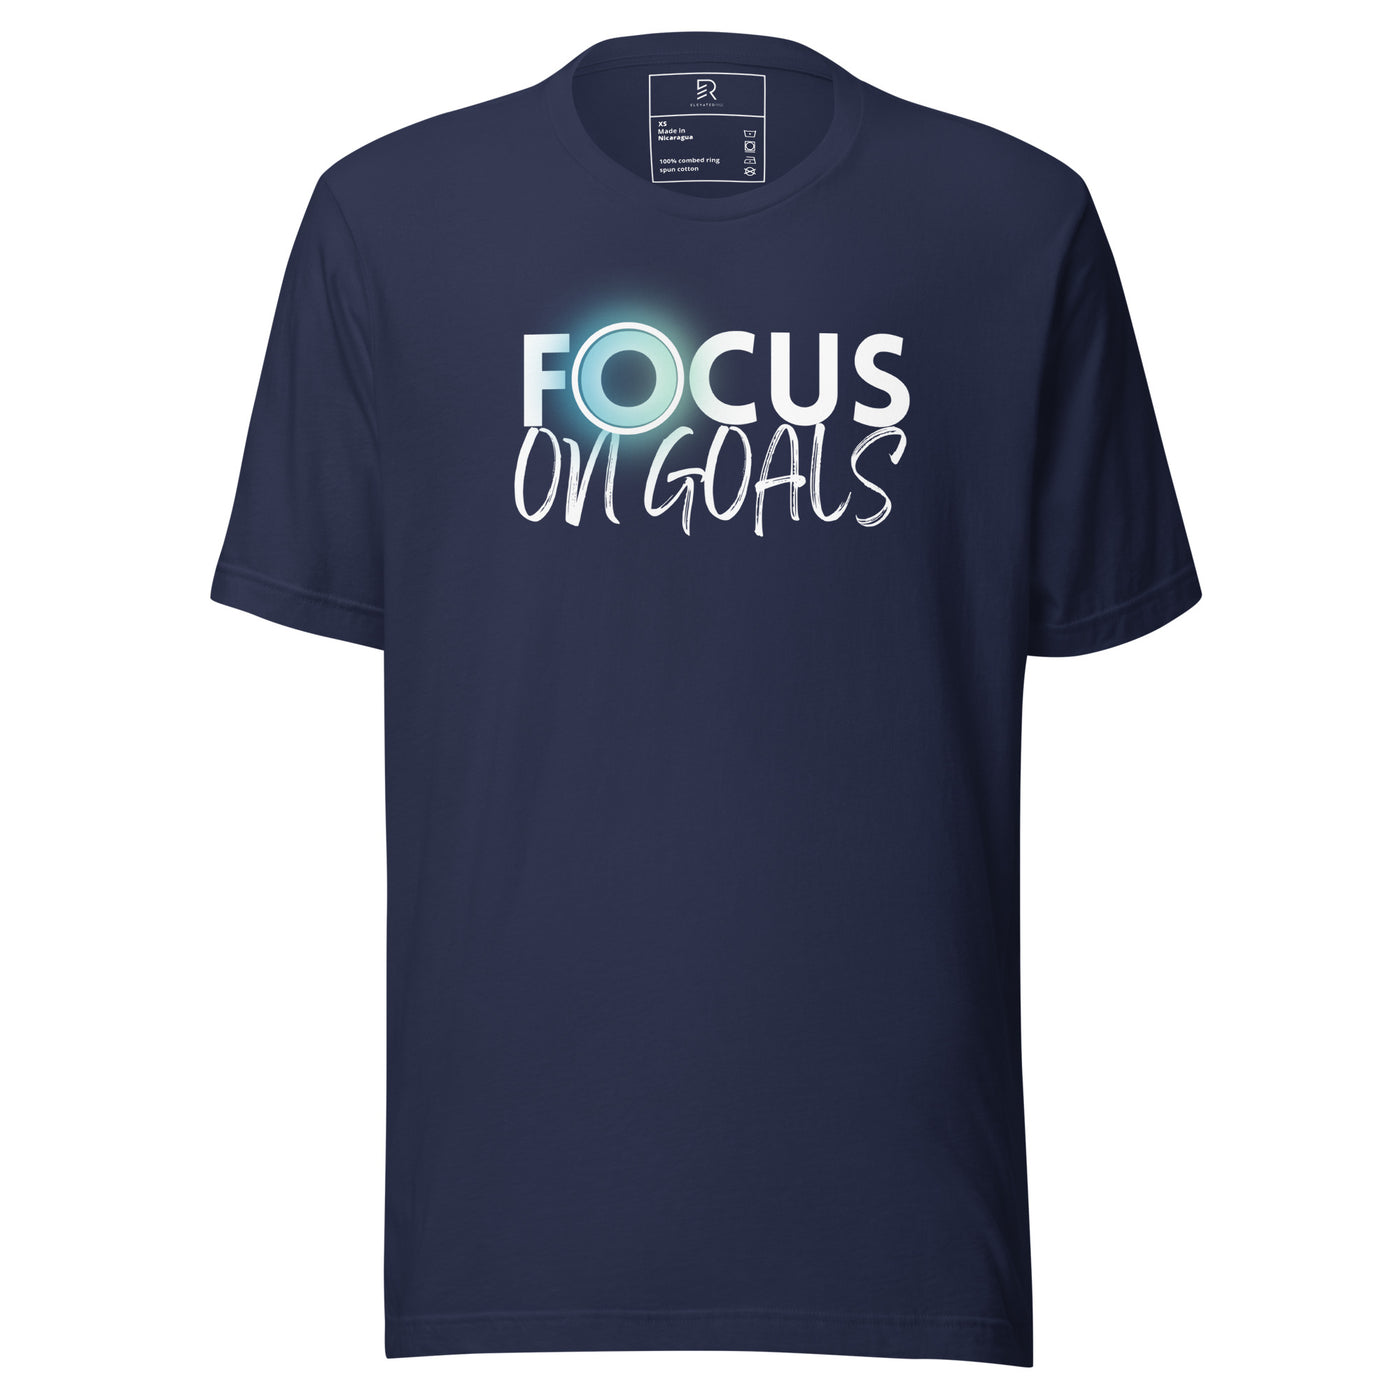 Women's Navy Staple T-Shirt - Focus On Goals